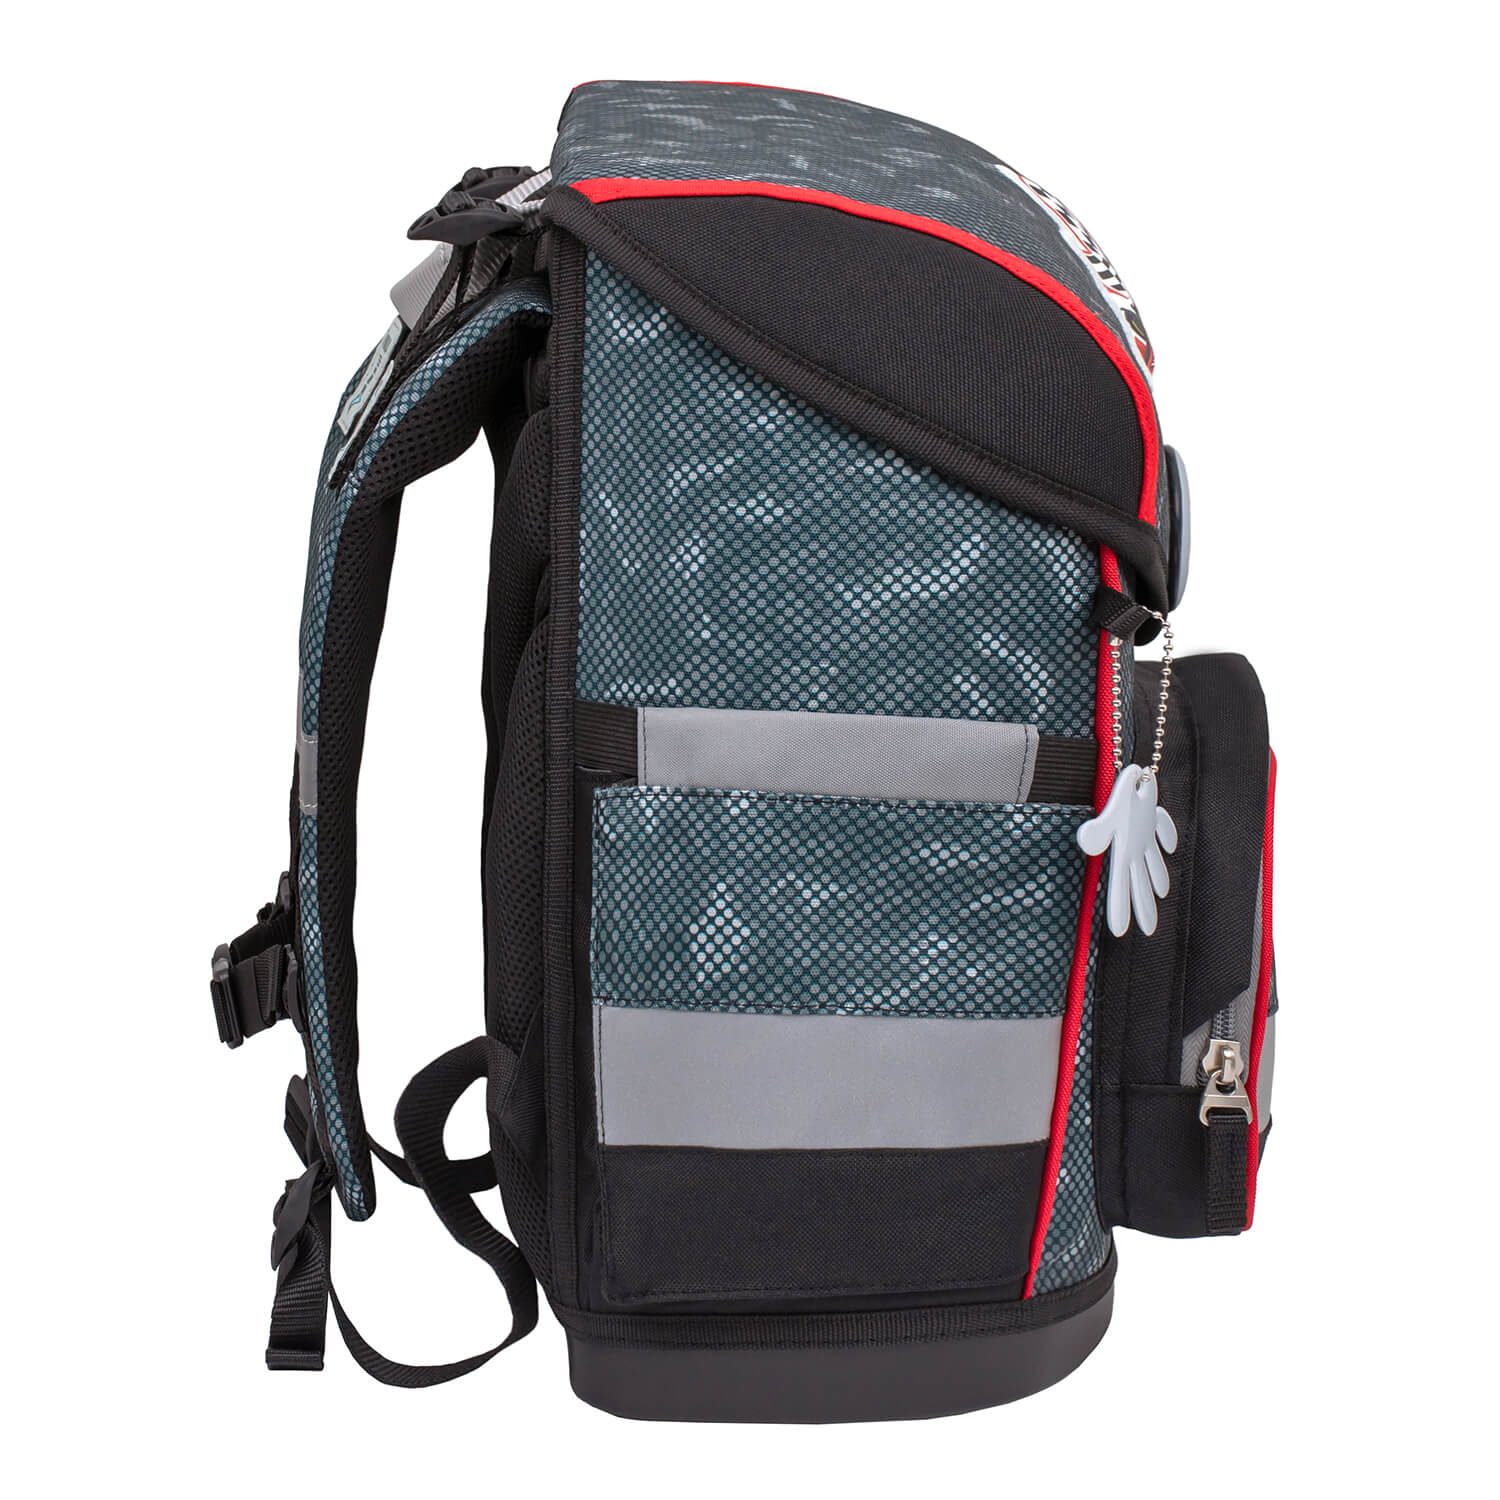 Compact Red Dots schoolbag set 4 pcs